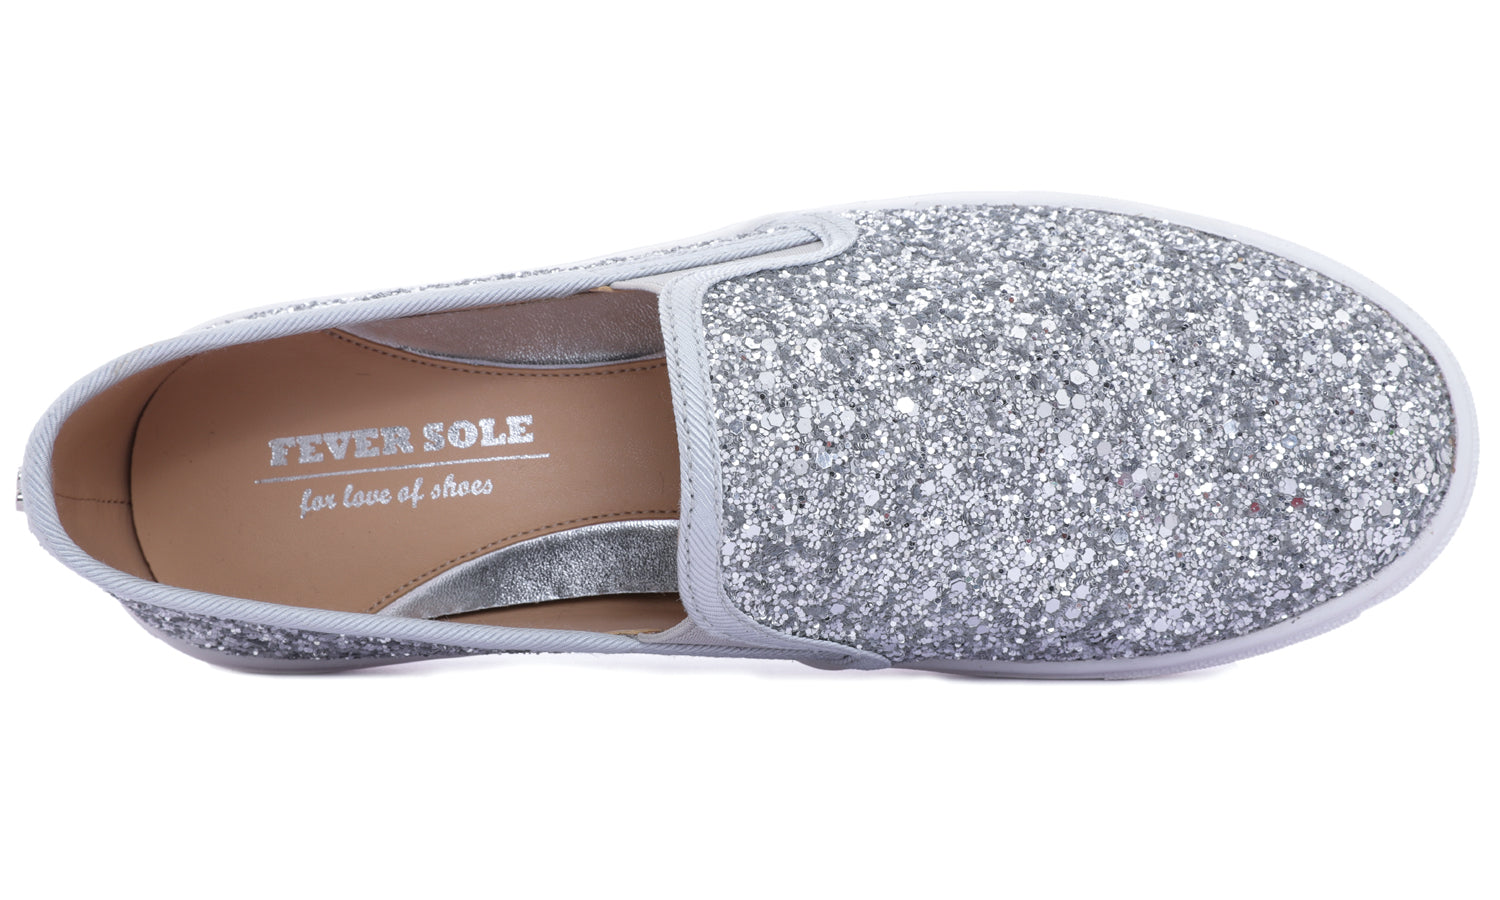 Feversole Women's Glitter Silver Slip On Sneaker Casual Flat Loafers